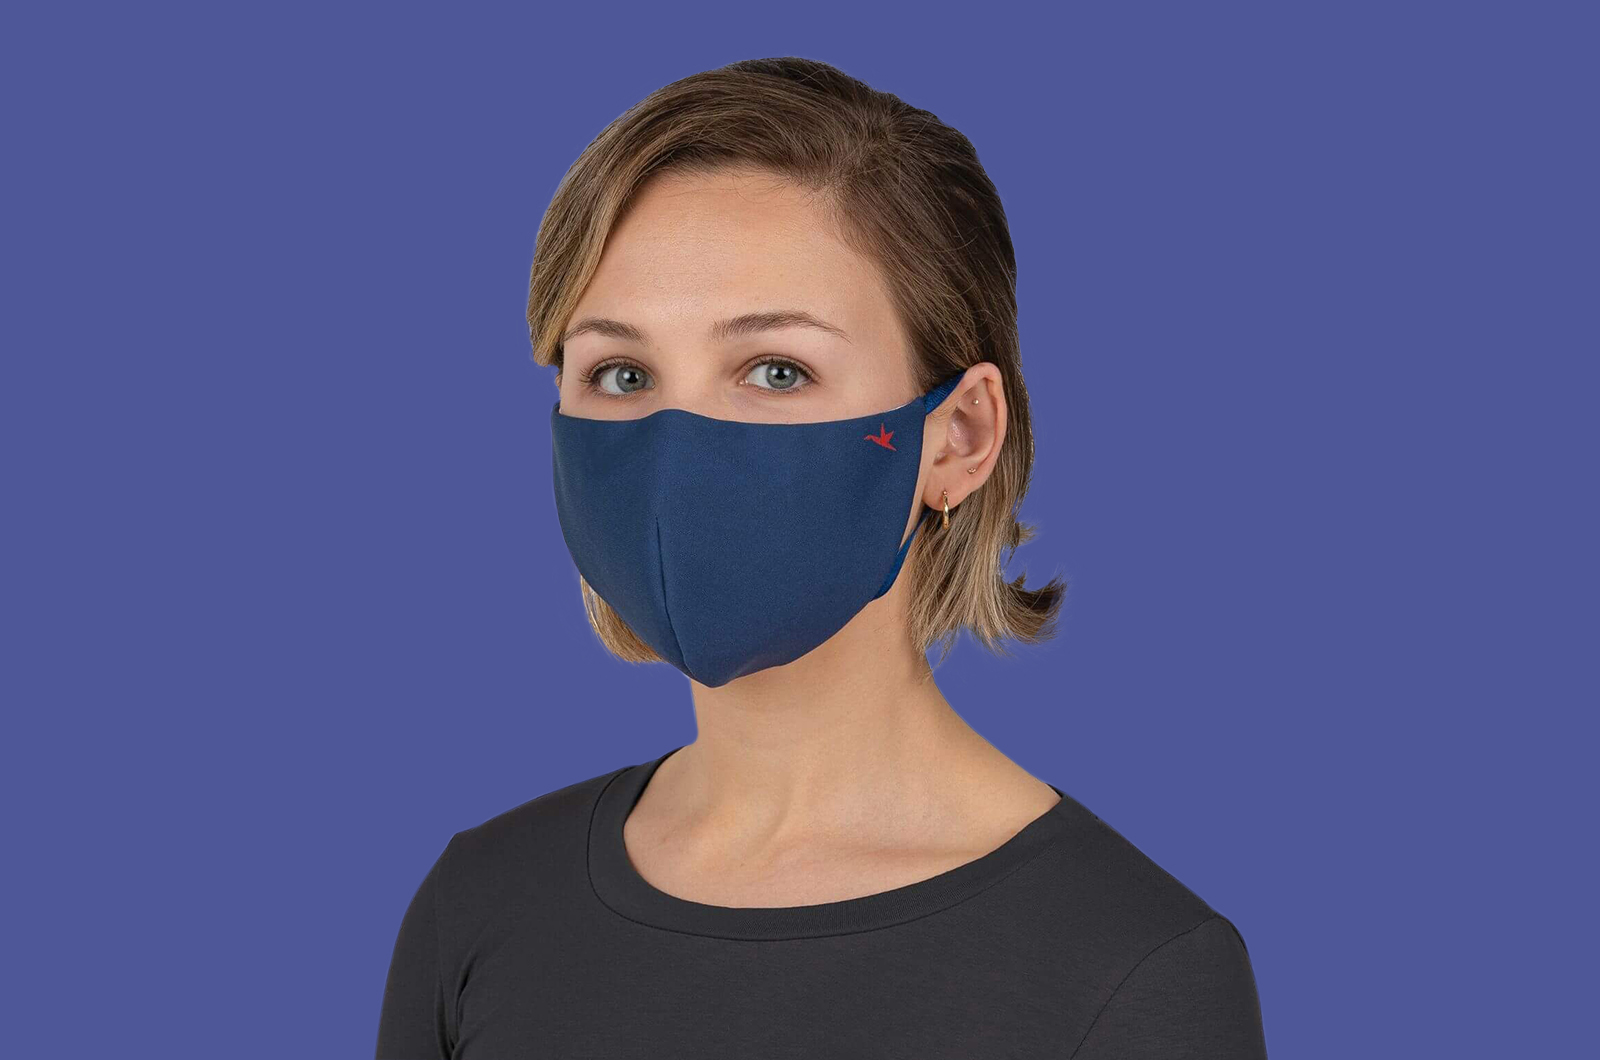 Best Face Mask for Coronavirus: Avoid 